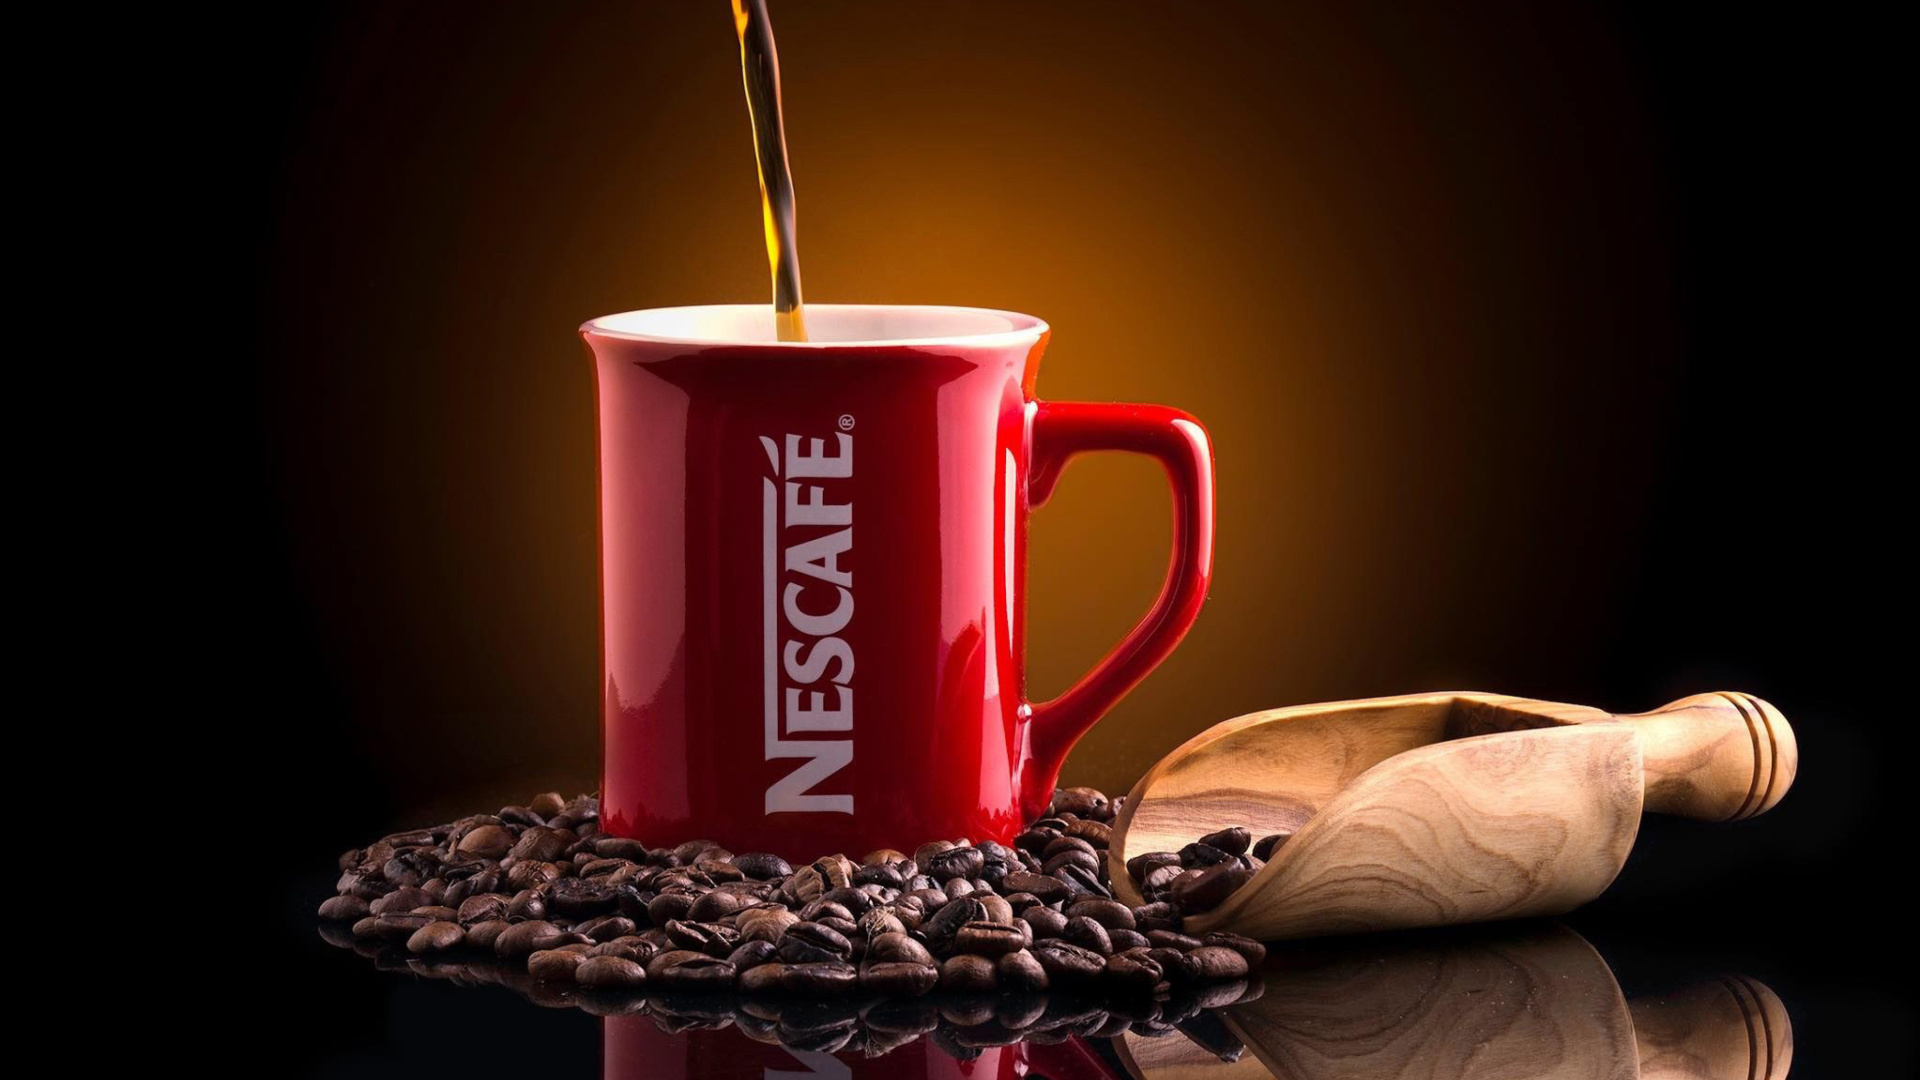 Sfondi Nescafe Coffee 1920x1080